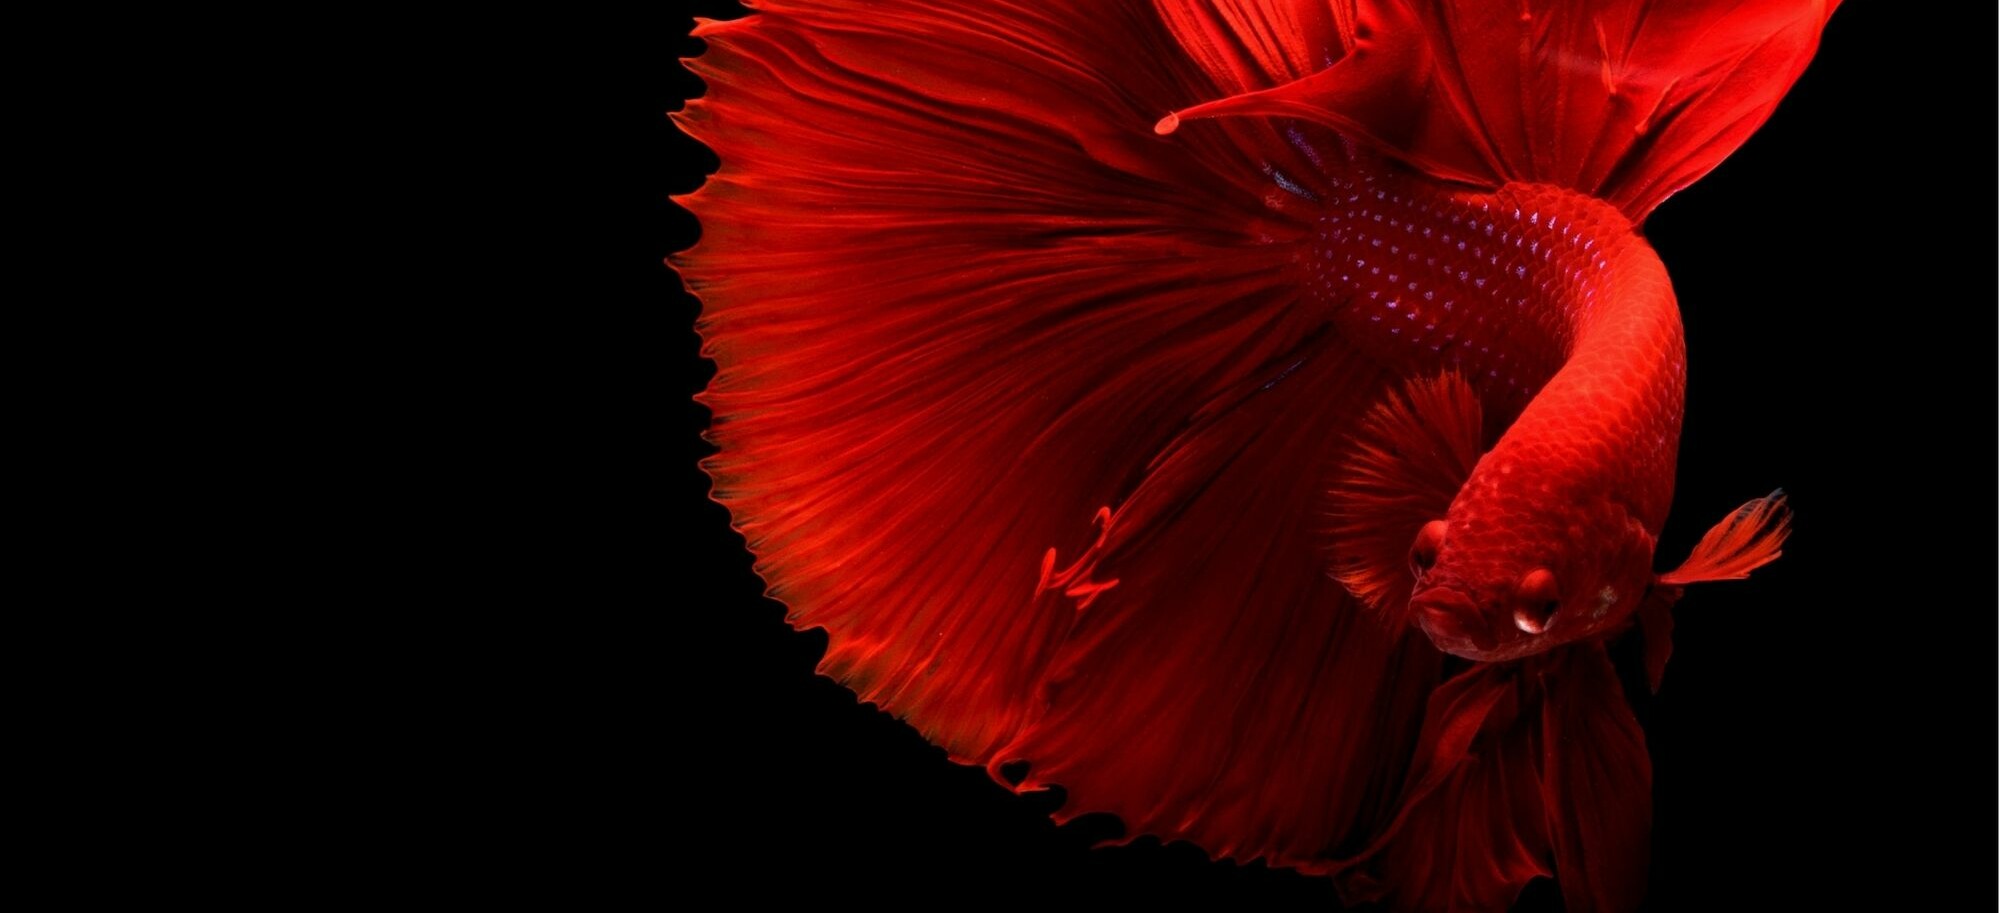 Červená ryba